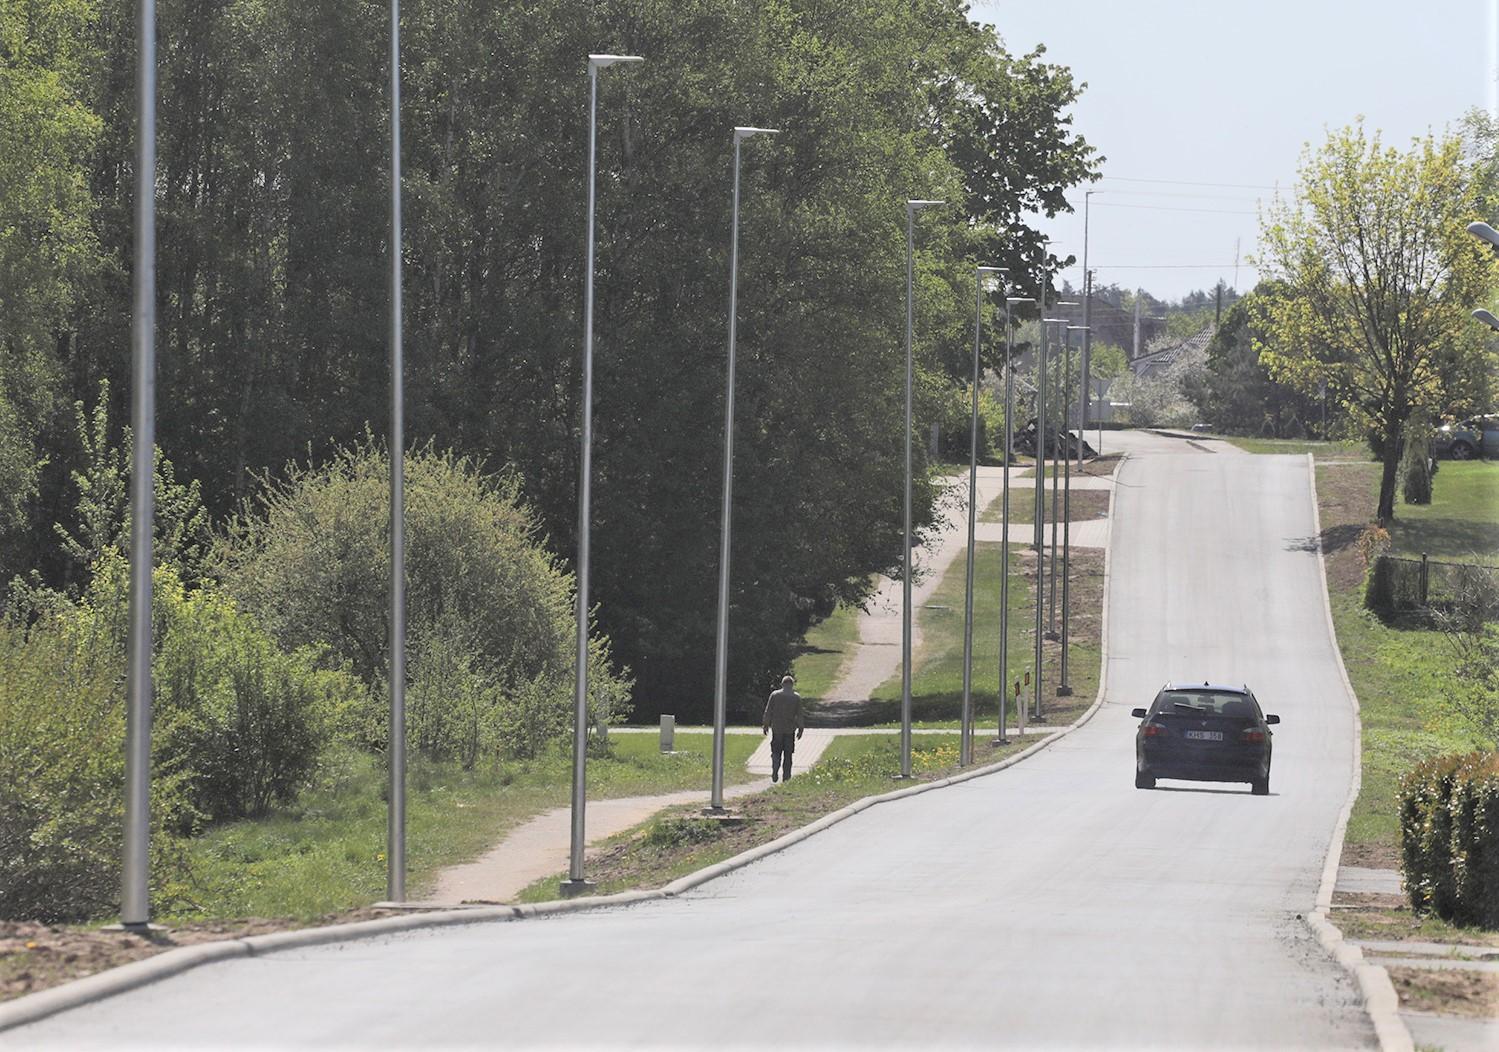 Atnaujinta 450-ies metrų ilgio Jaunimo gatvės atkarpa / Dainiaus Vyto nuotr. 450-ies metrų ilgio gatvės ruože paklota nauja asfaltbetonio danga.